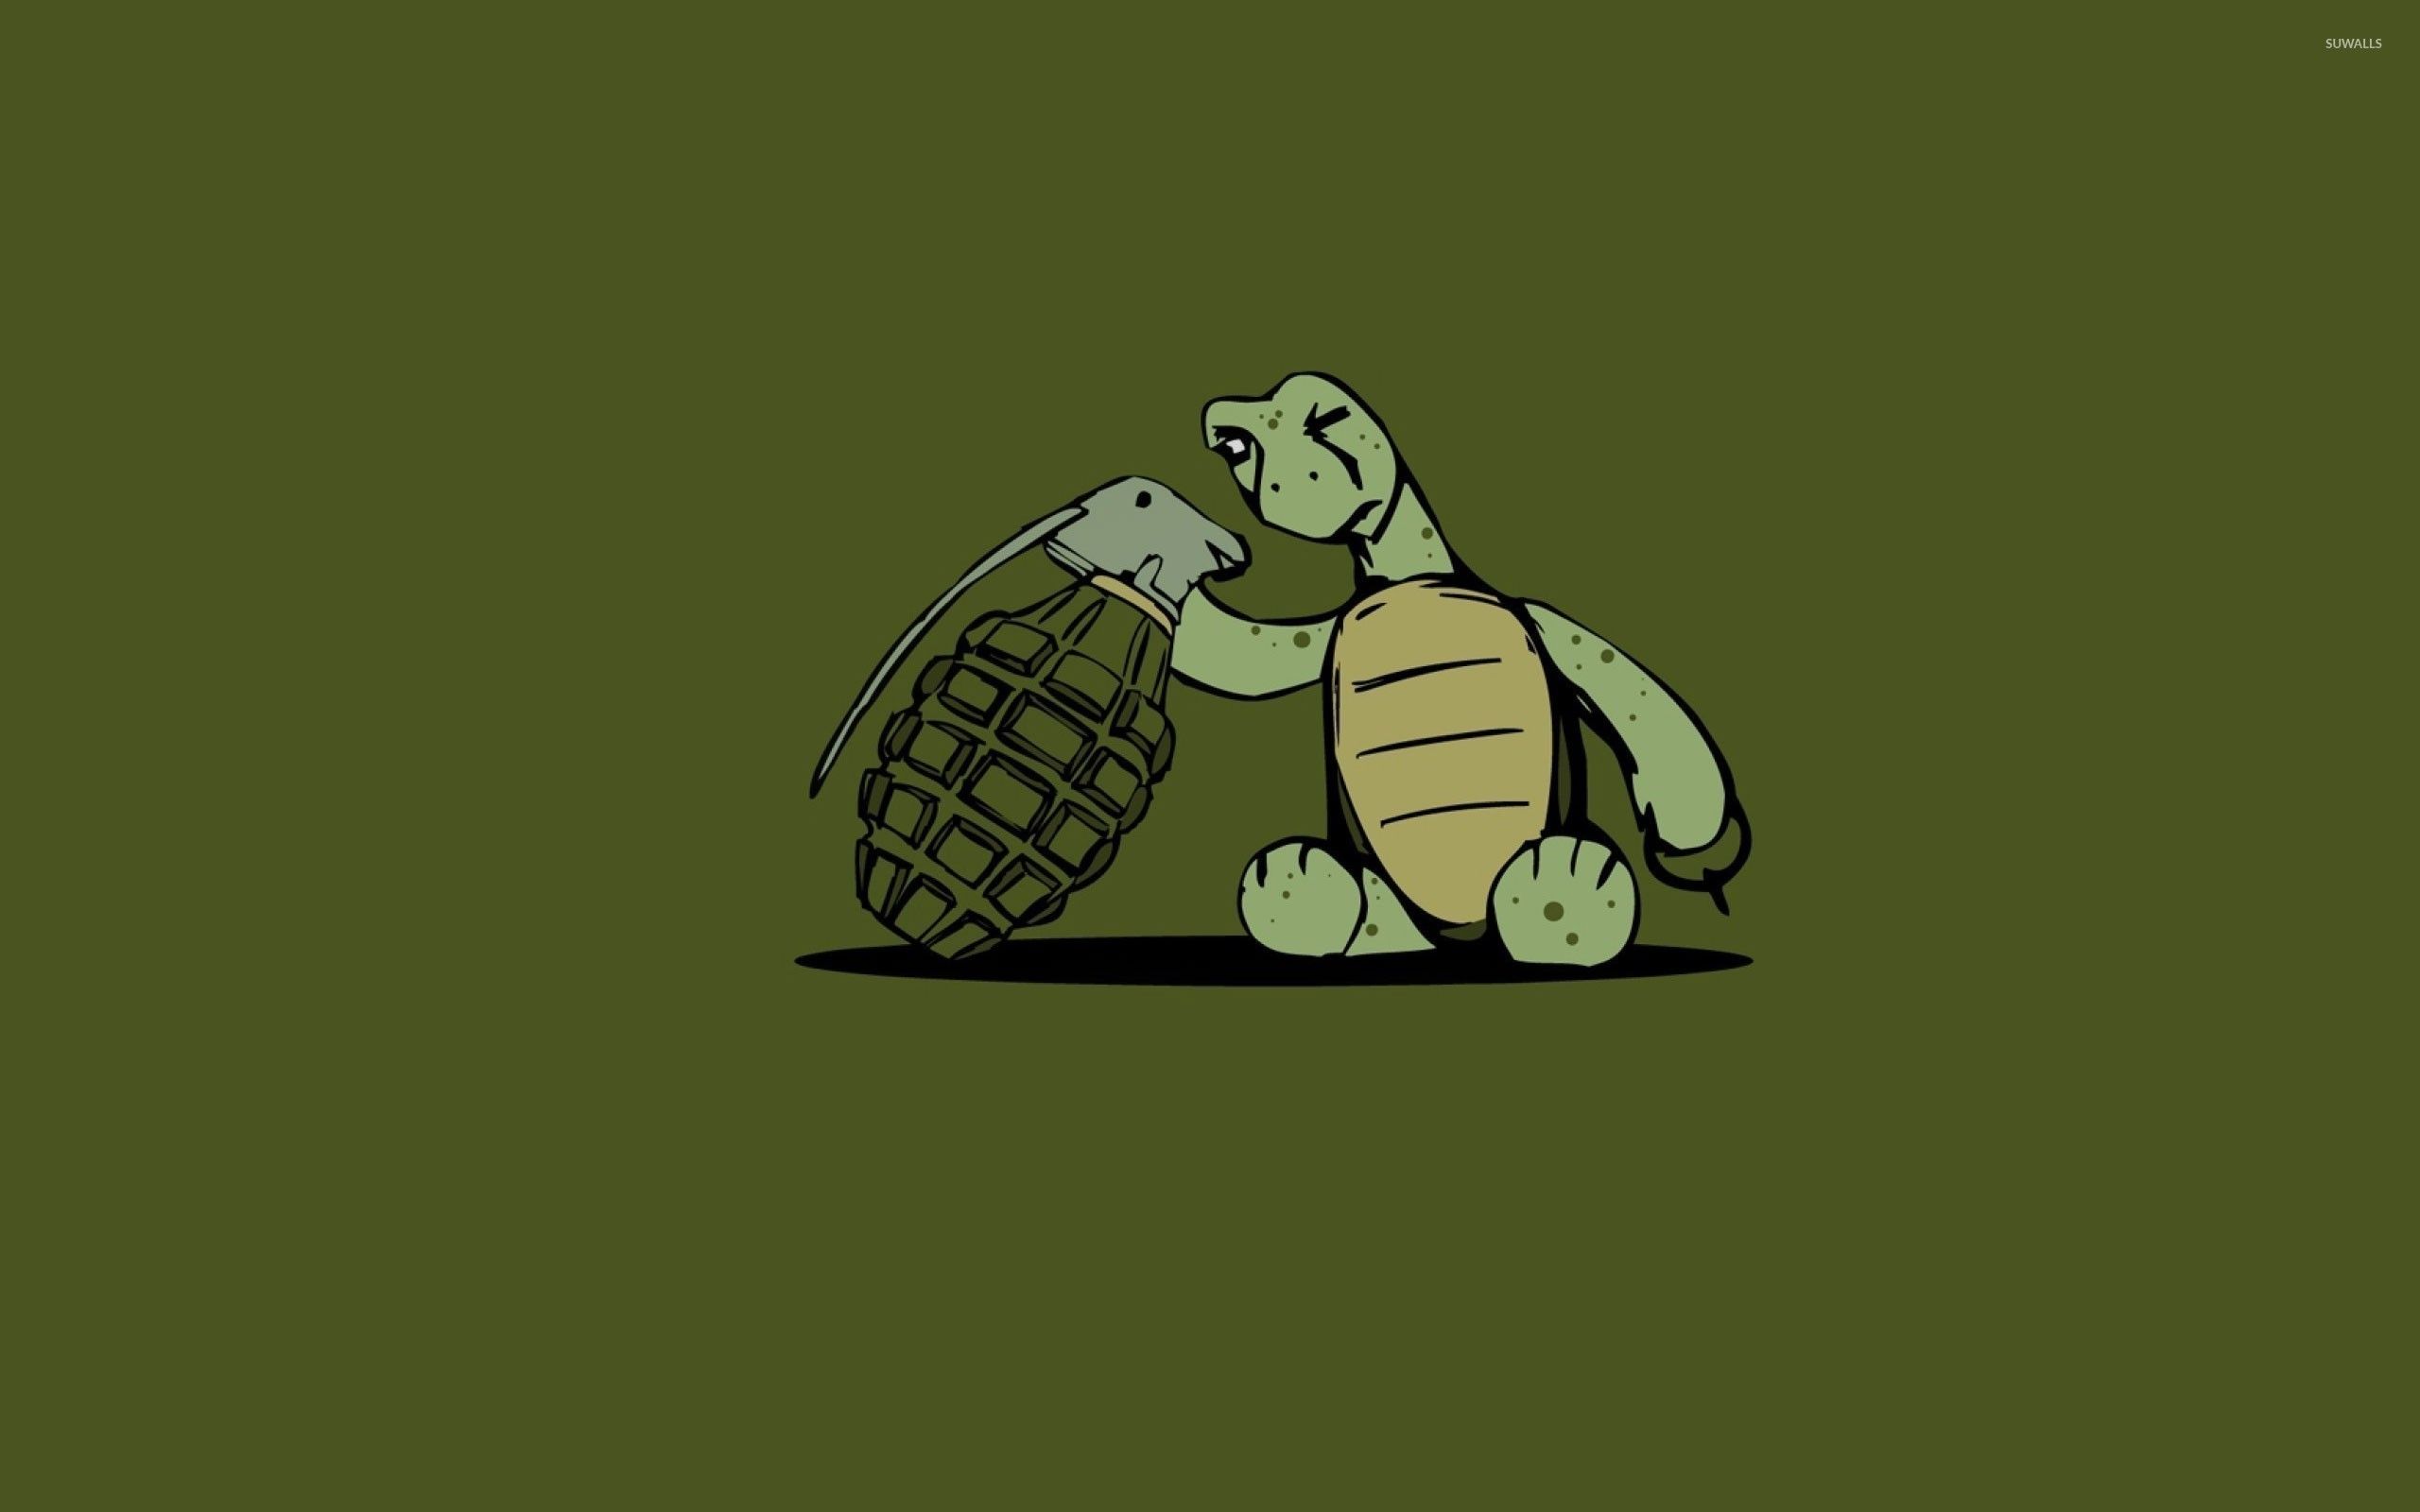 Cute Cartoon Turtle Wallpapers